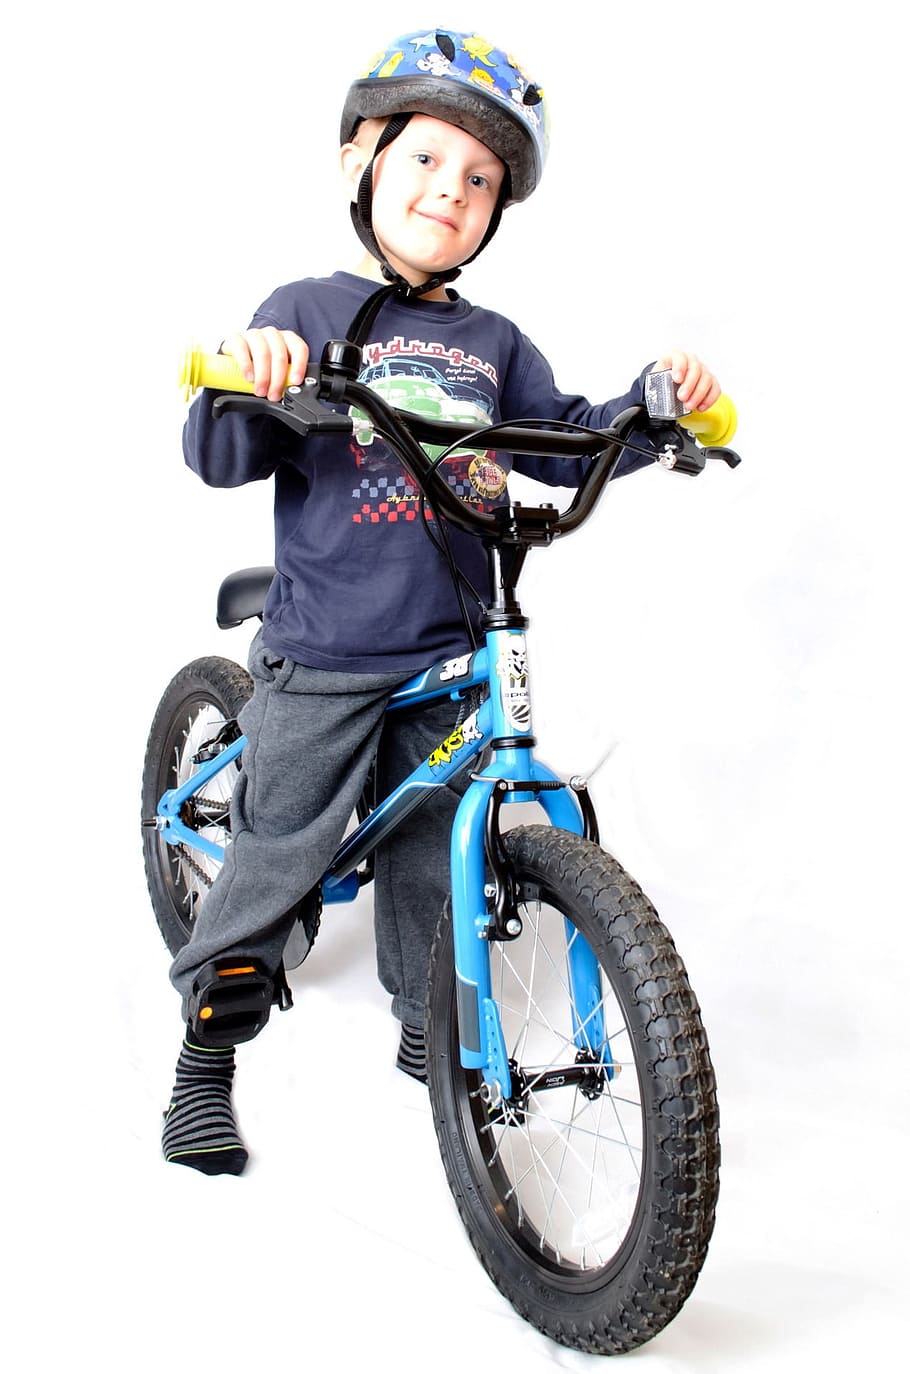 HD wallpaper: boy standing on BMX bike wearing helmet, Bike, Boy, Isolated  | Wallpaper Flare